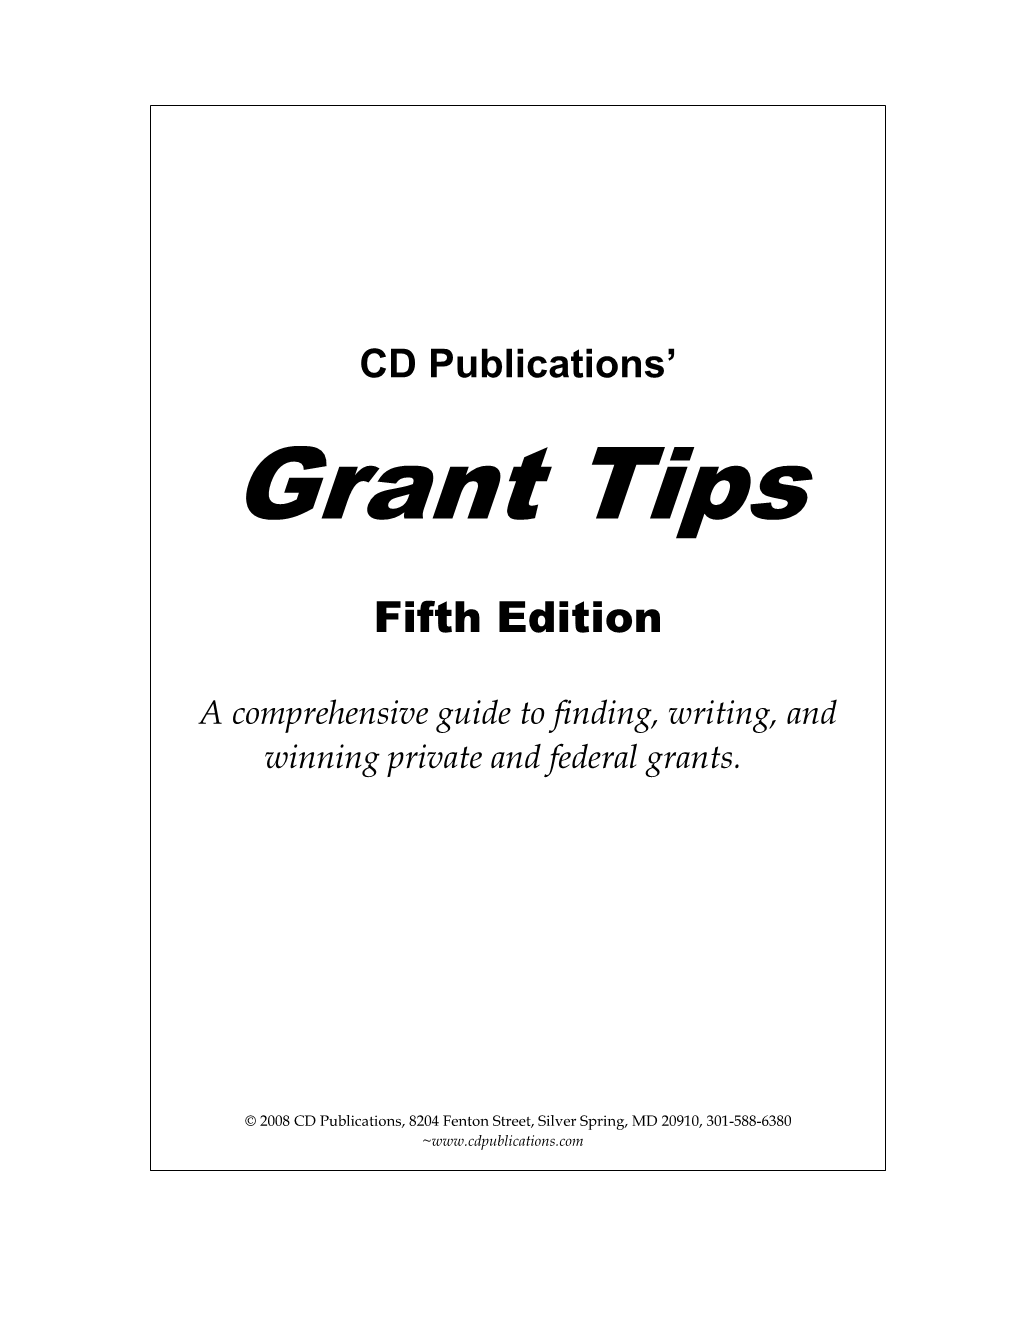 I. Grant Tips